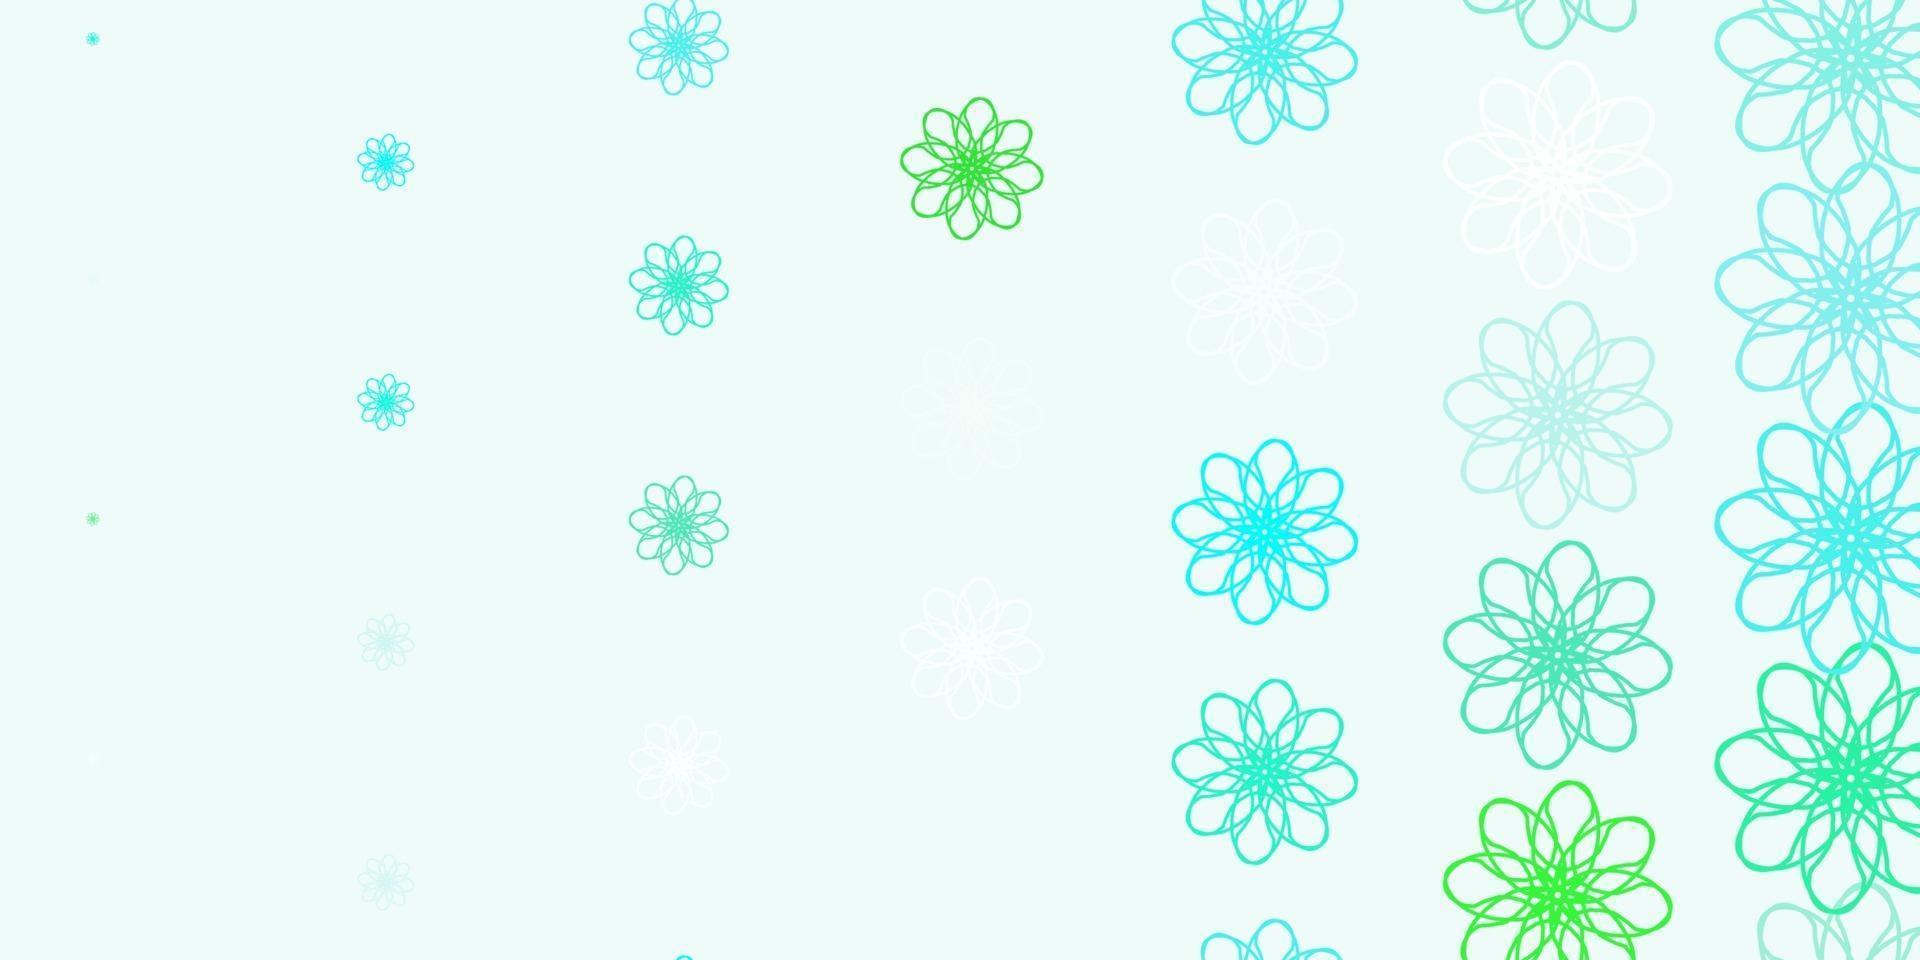 fond de doodle vecteur vert clair avec des fleurs.